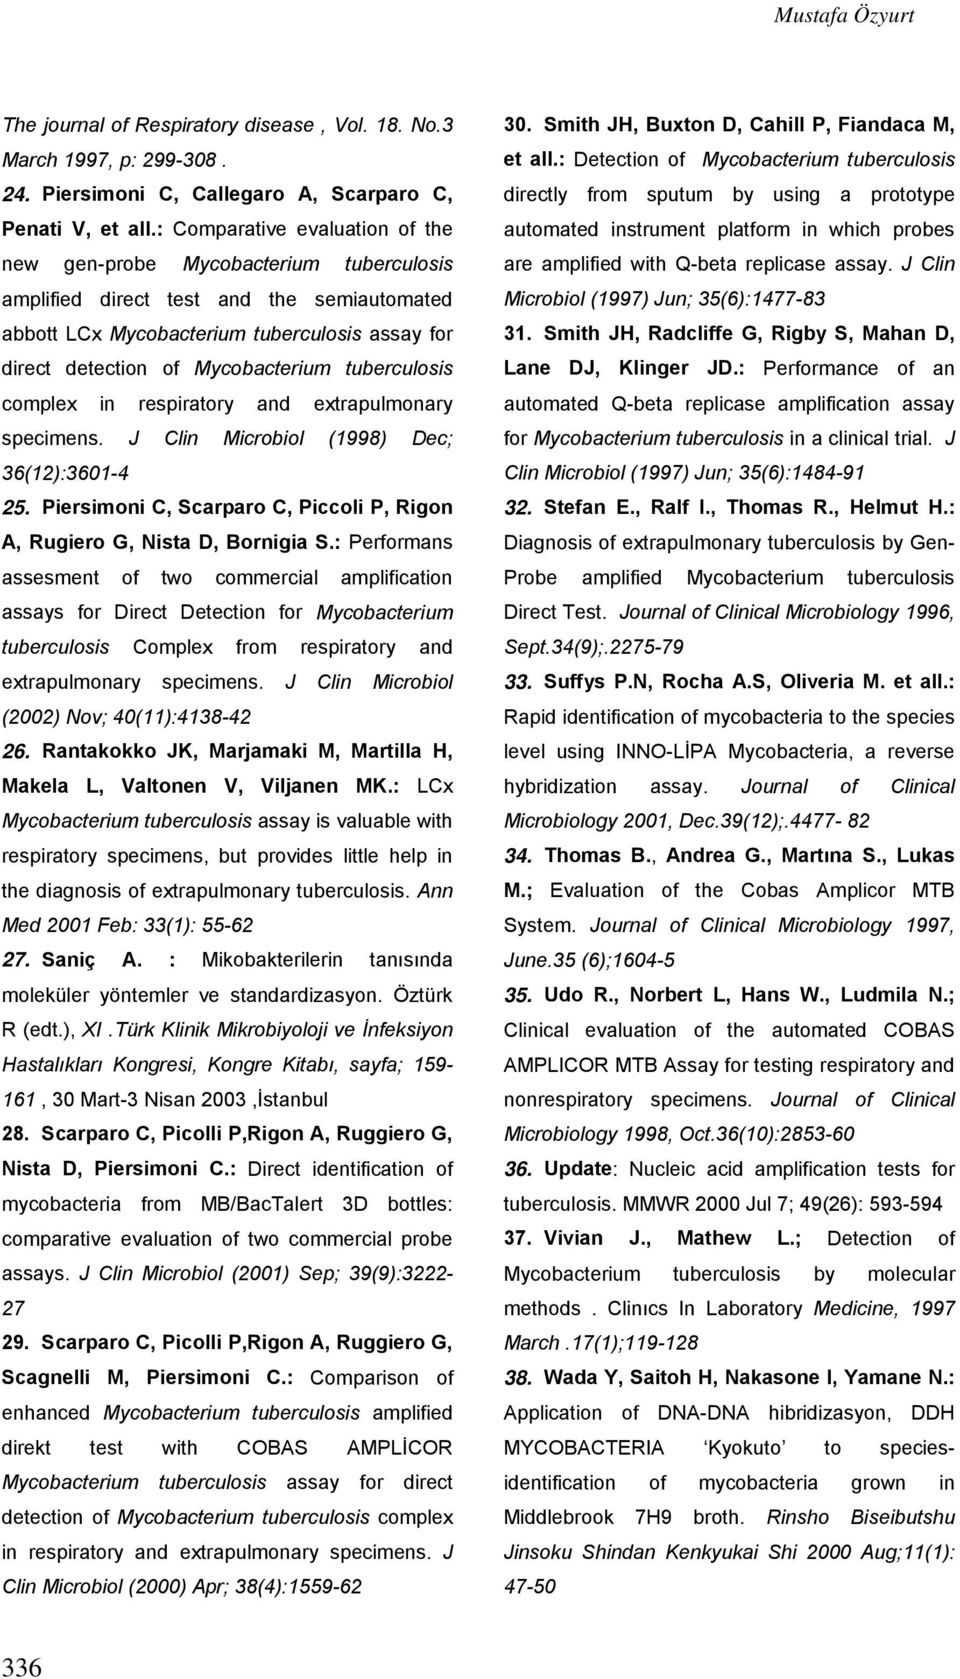 tuberculosis complex in respiratory and extrapulmonary specimens. J Clin Microbiol (1998) Dec; 36(12):3601-4 25. Piersimoni C, Scarparo C, Piccoli P, Rigon A, Rugiero G, Nista D, Bornigia S.